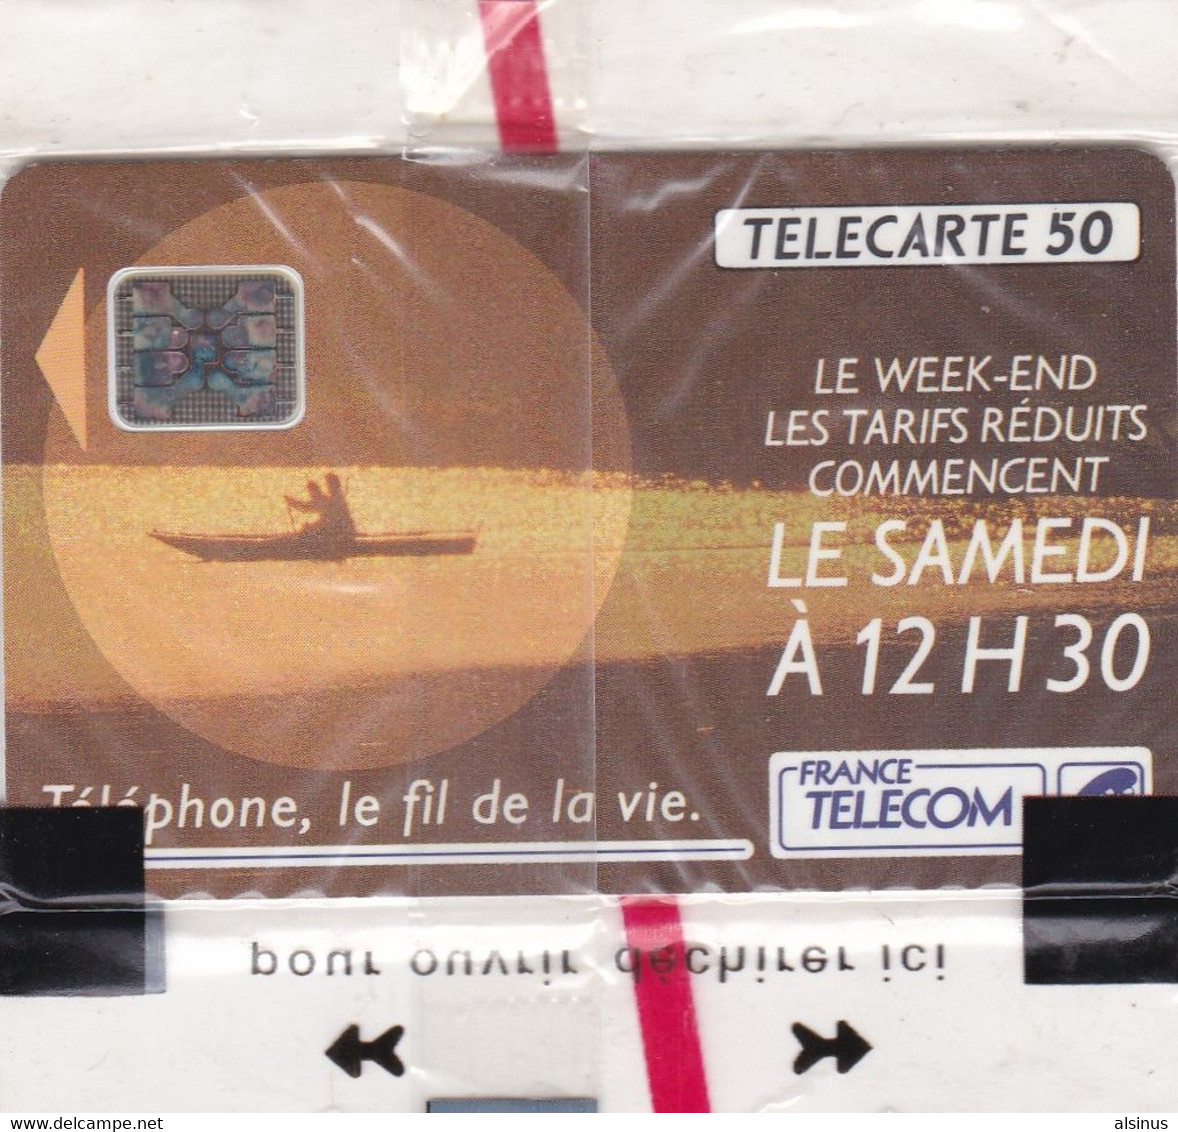 TELECARTES - LE WEEK END LES TARIFS REDUITS COMMENCENT LE SAMEDI A 12 H 30 - 50 UNITES - SOUS BLISTER - Opérateurs Télécom